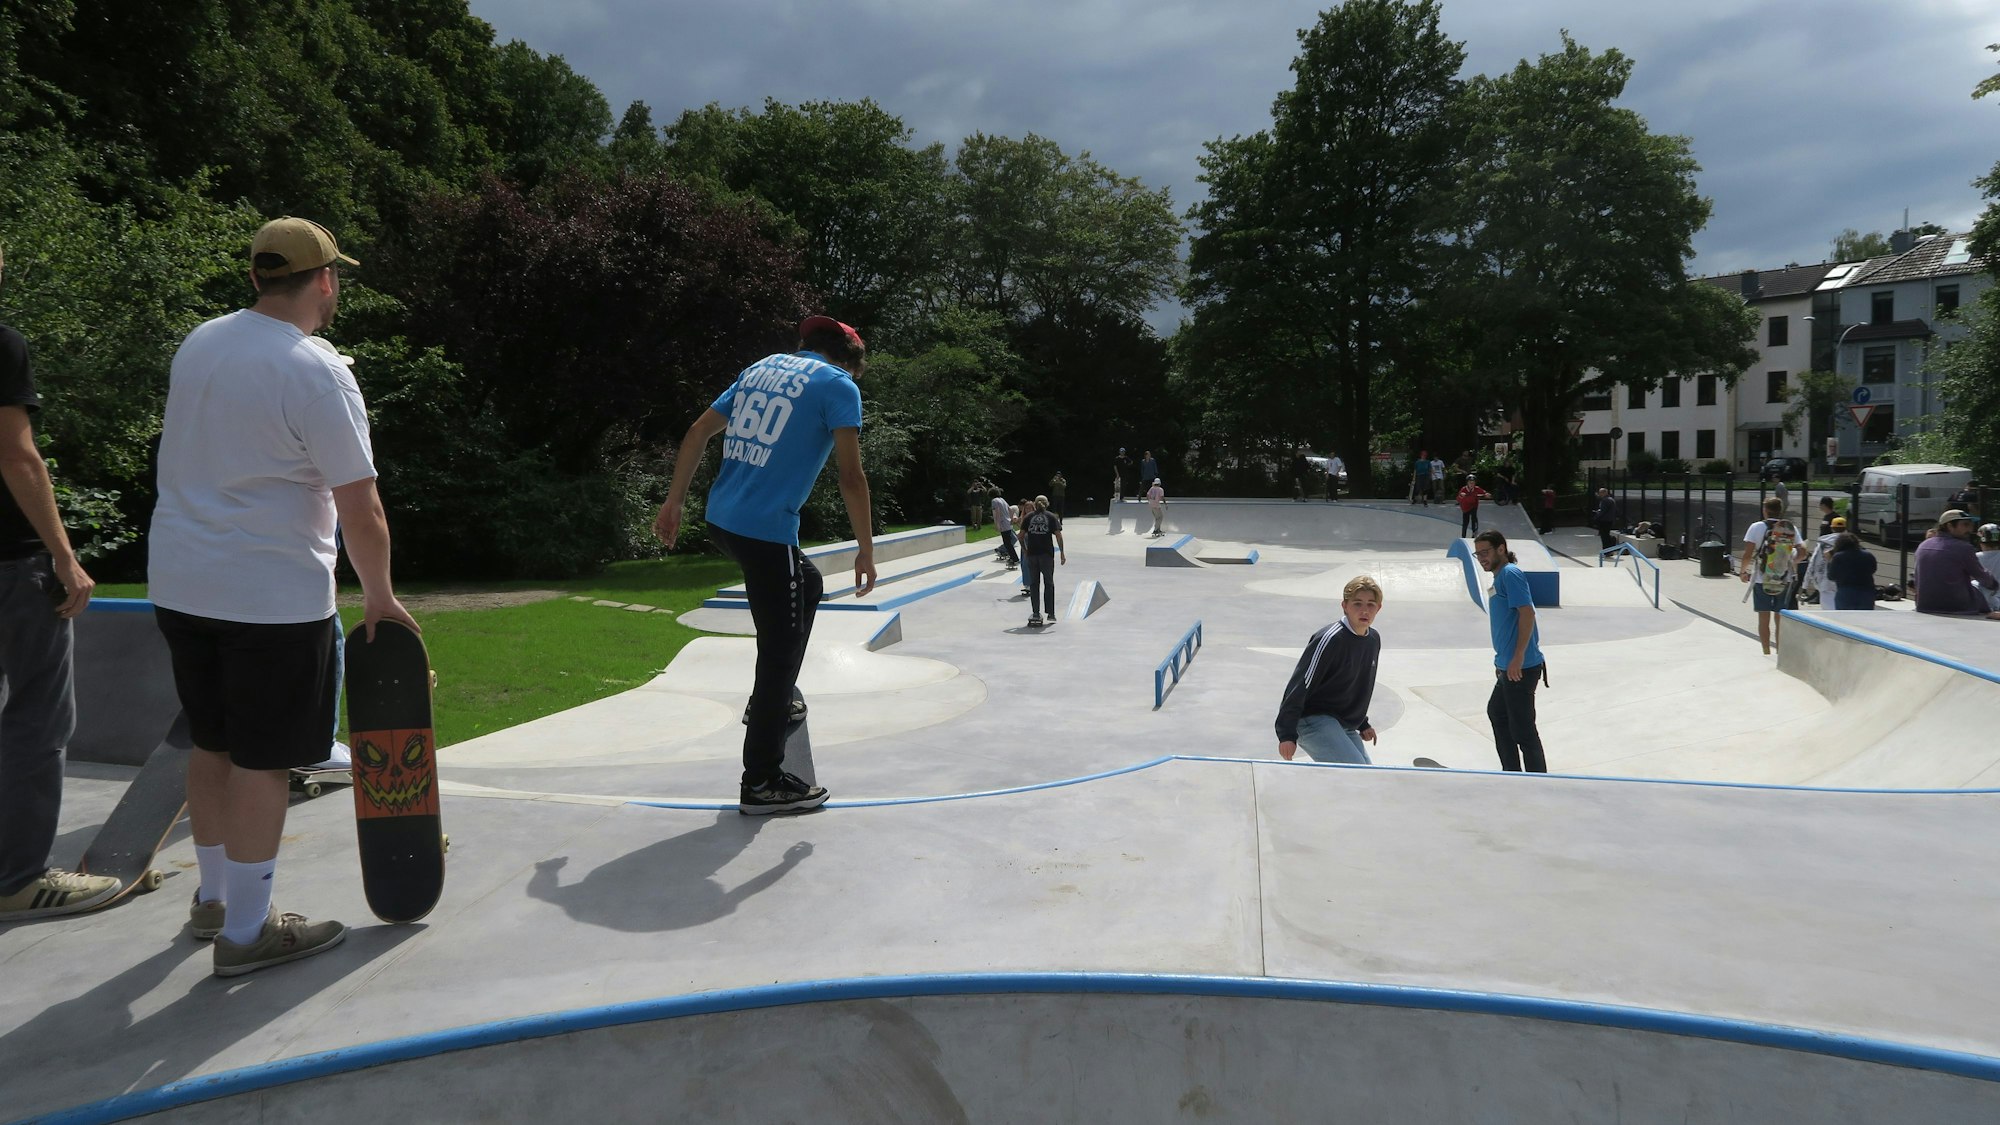 Der Skatepark in Köln ist eine große barrierefreie Betonlandschaft mit verschiedenen Elementen.